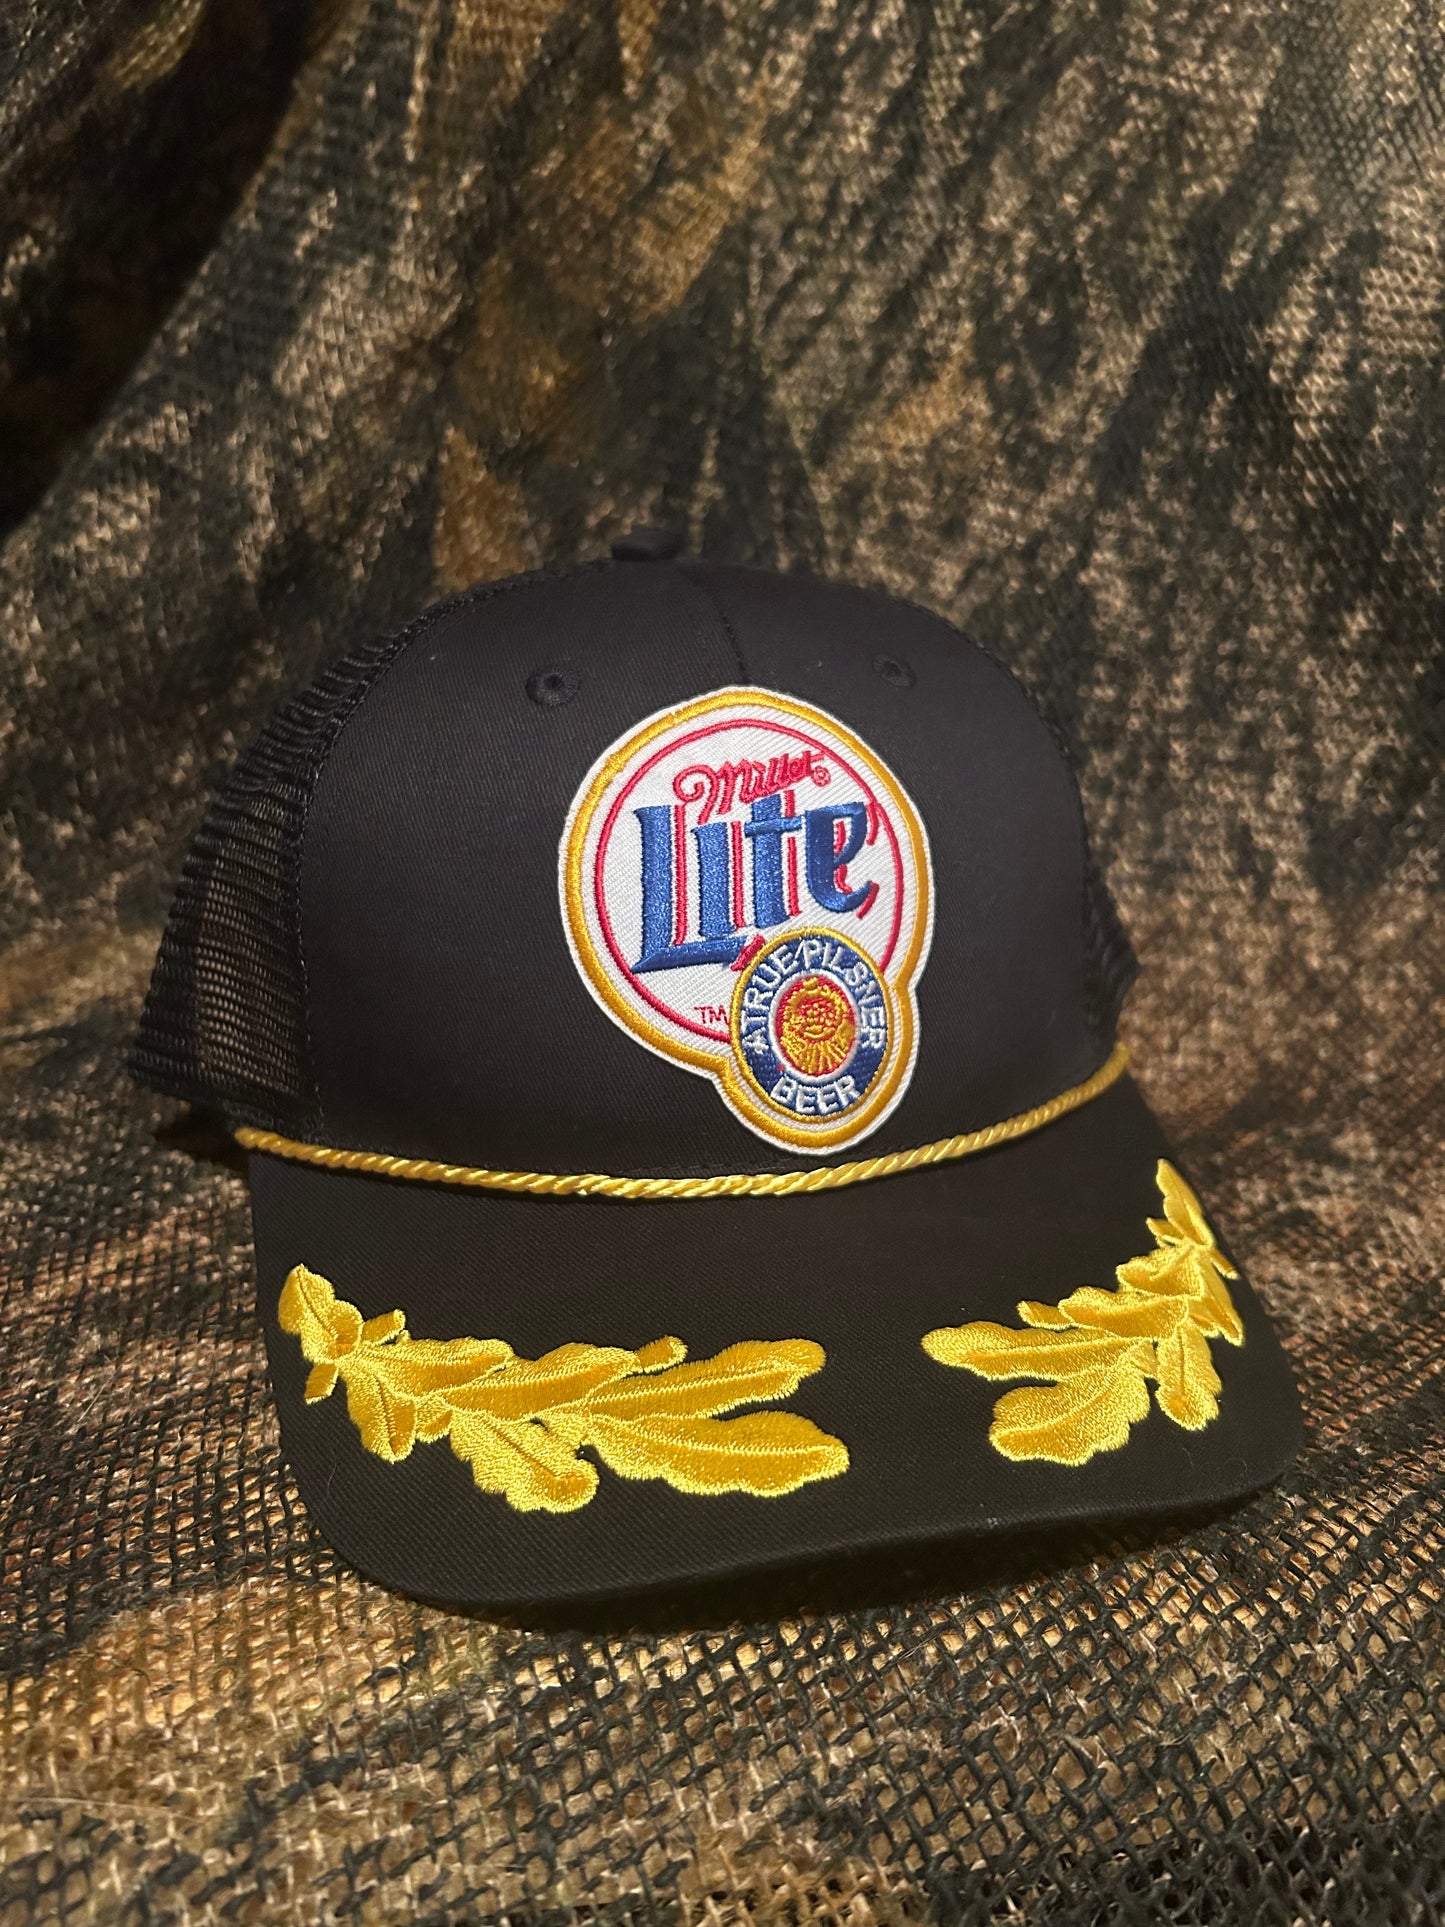 Miller Lite patch on a vintage Black wreathed adjustable trucker hat